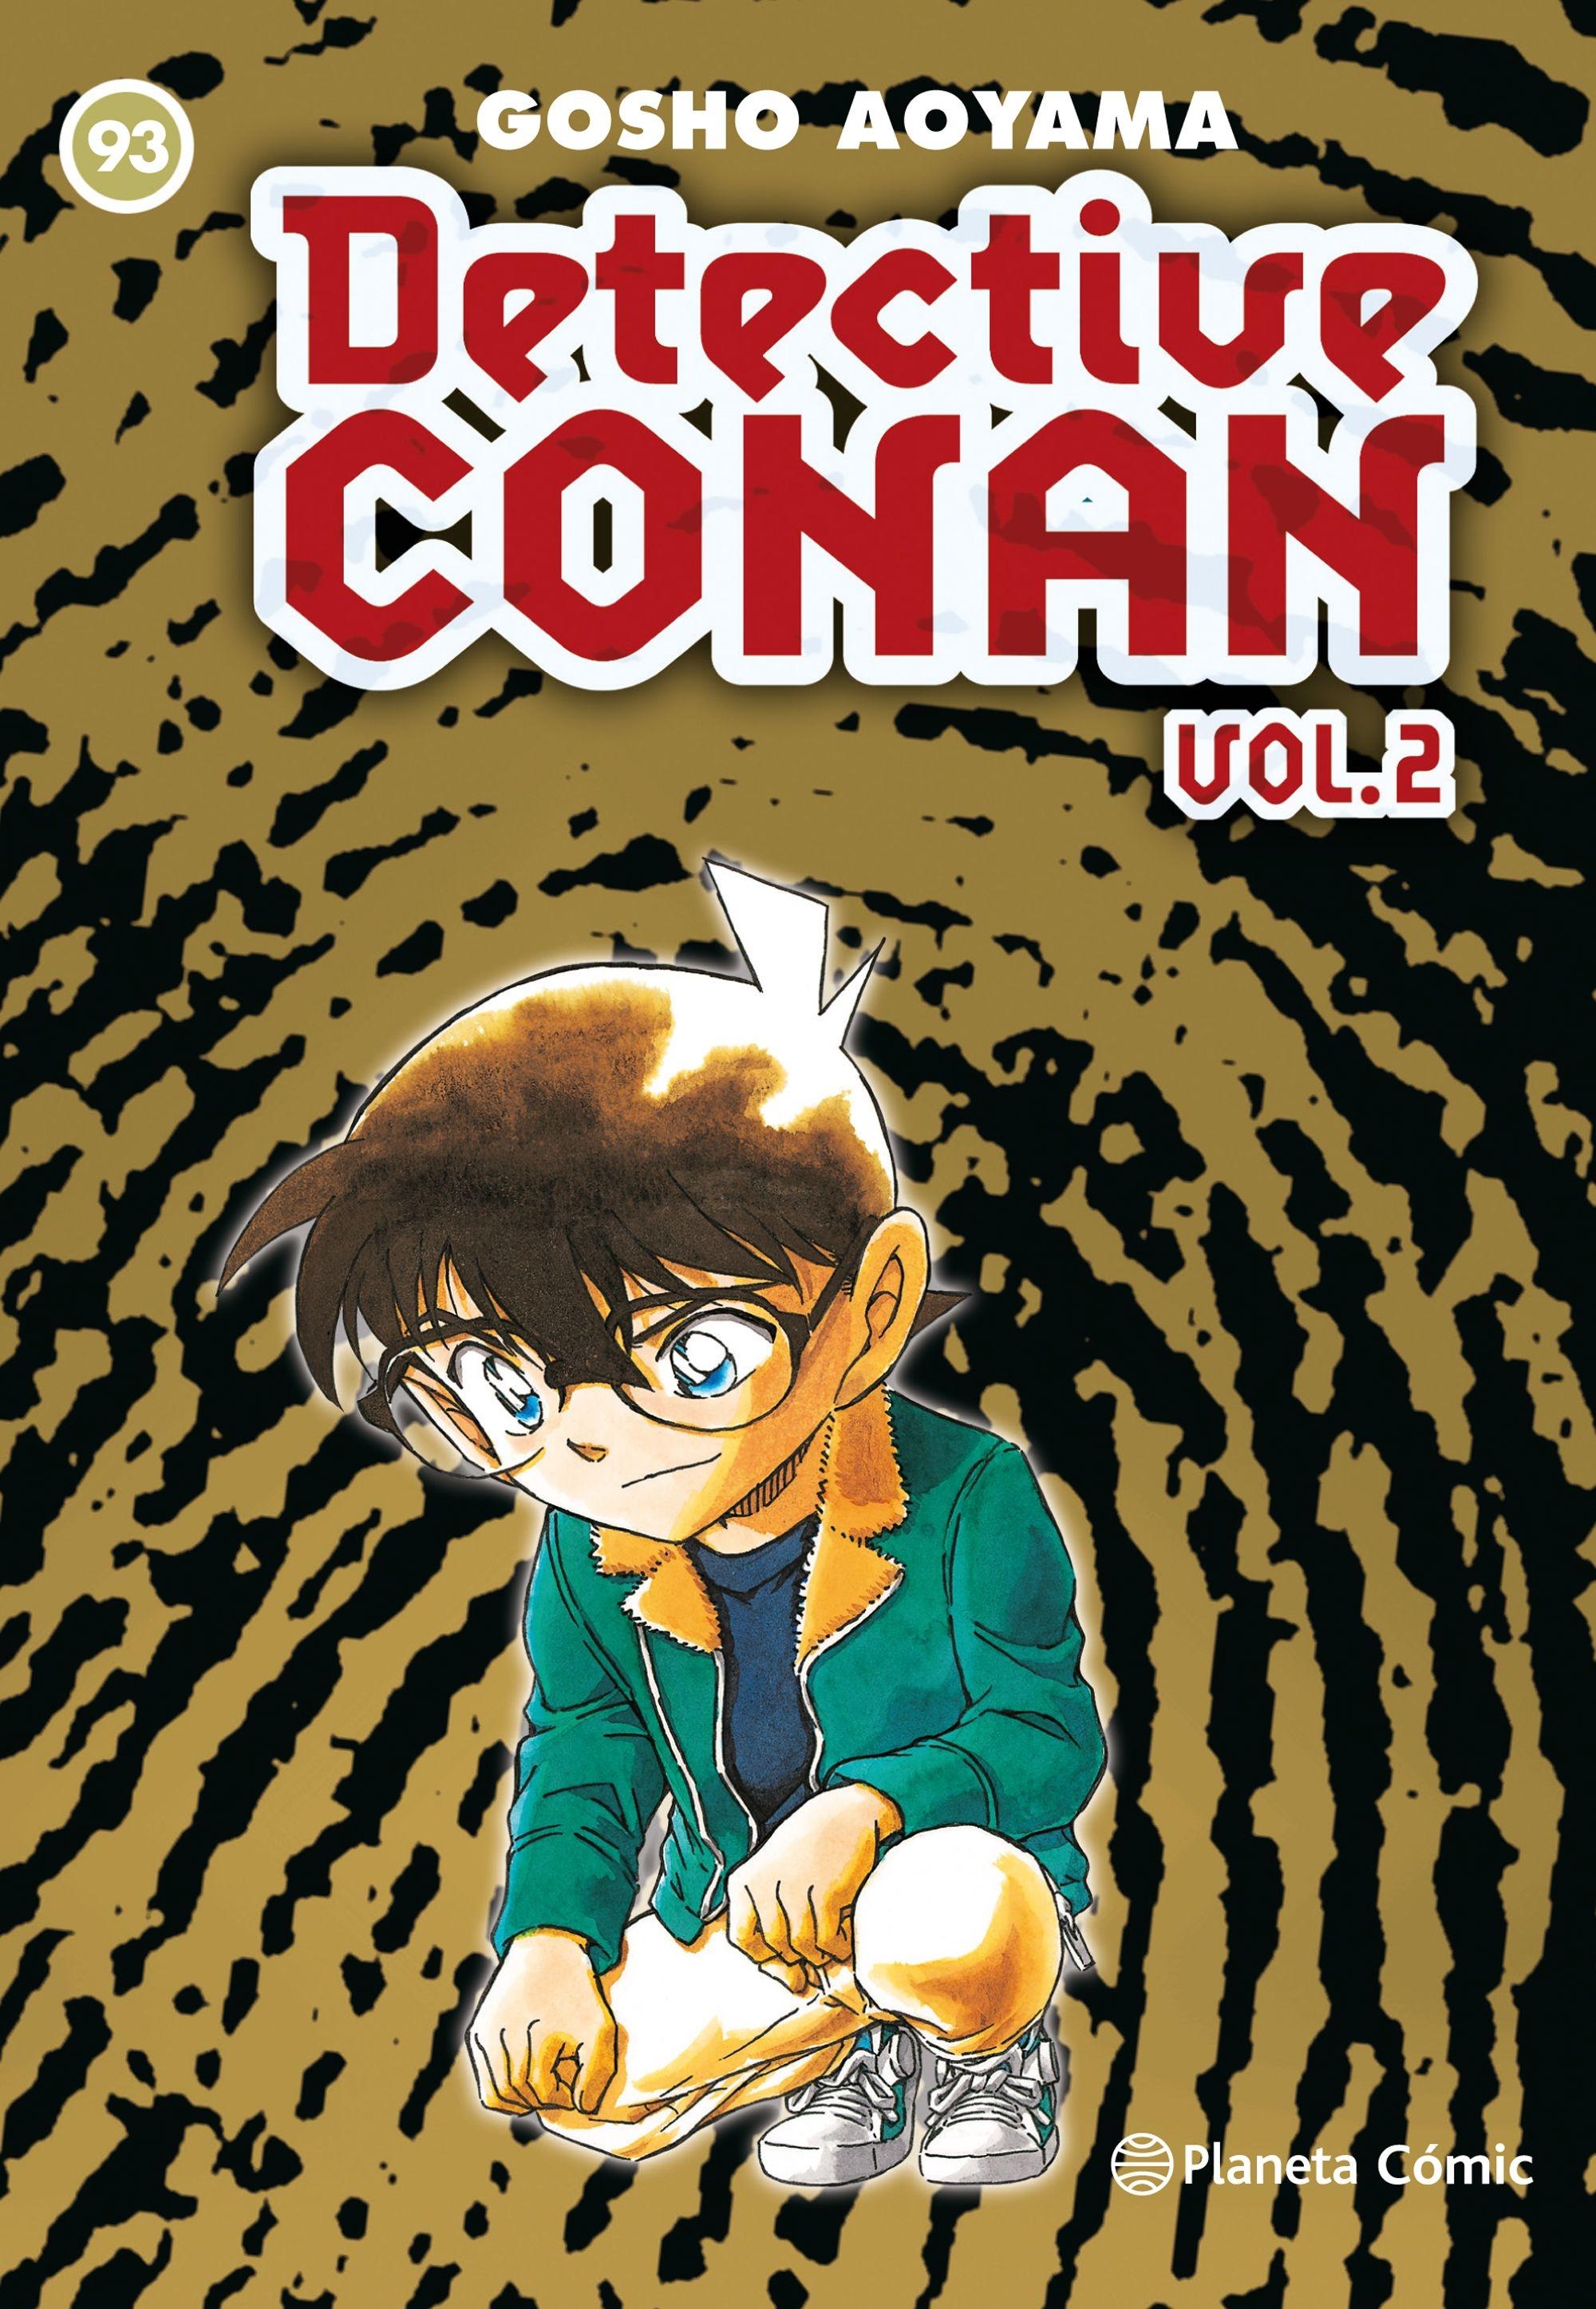 Detective Conan Vol.2 | Nº 93